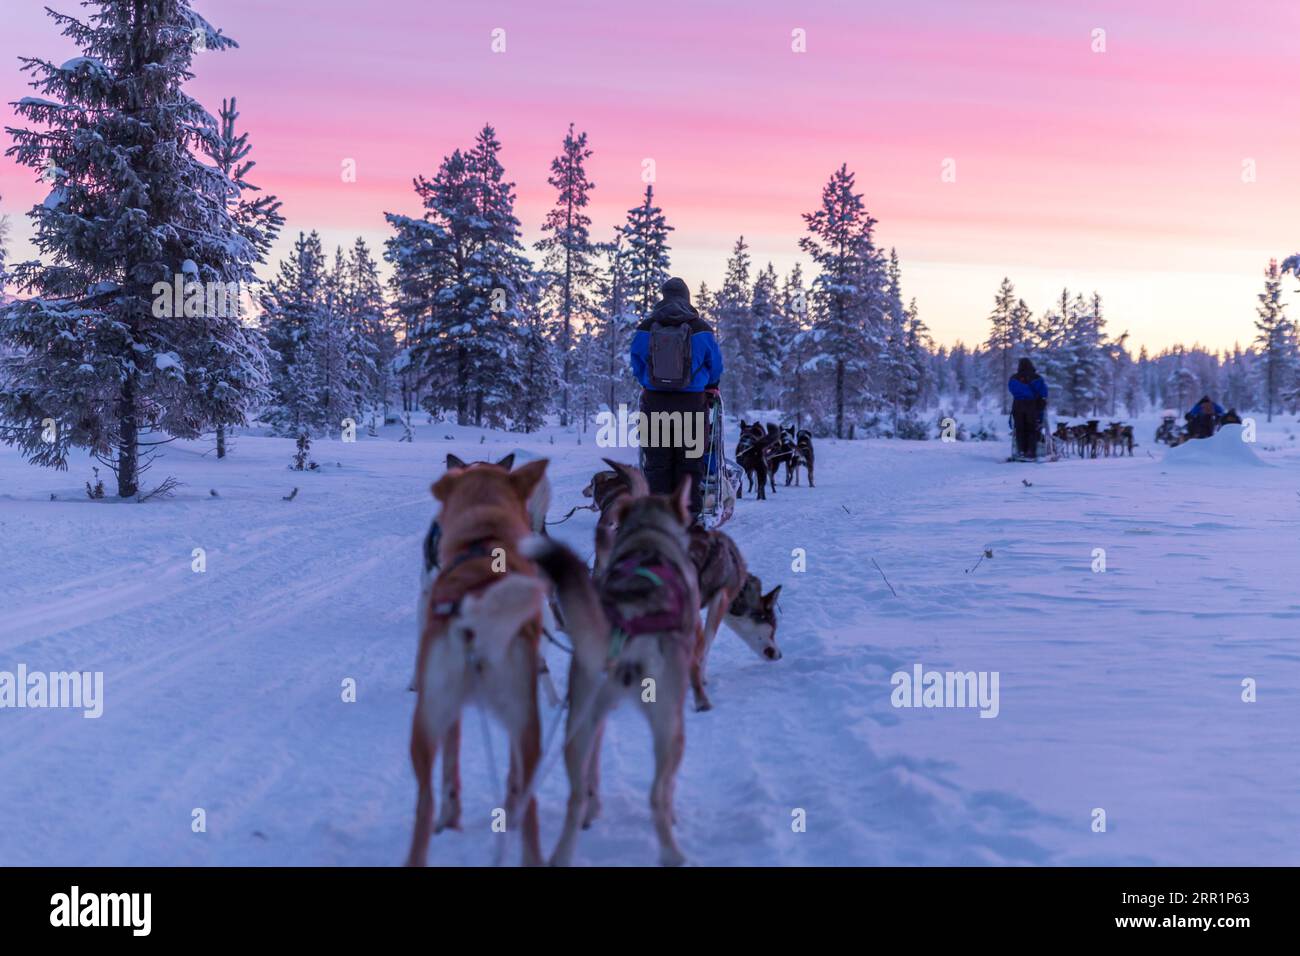 Vue arrière d'hommes anonymes en vêtements chauds marchant avec une meute de chiens domestiqués et un traîneau sur un terrain enneigé contre des arbres couverts de gel et un pi Banque D'Images